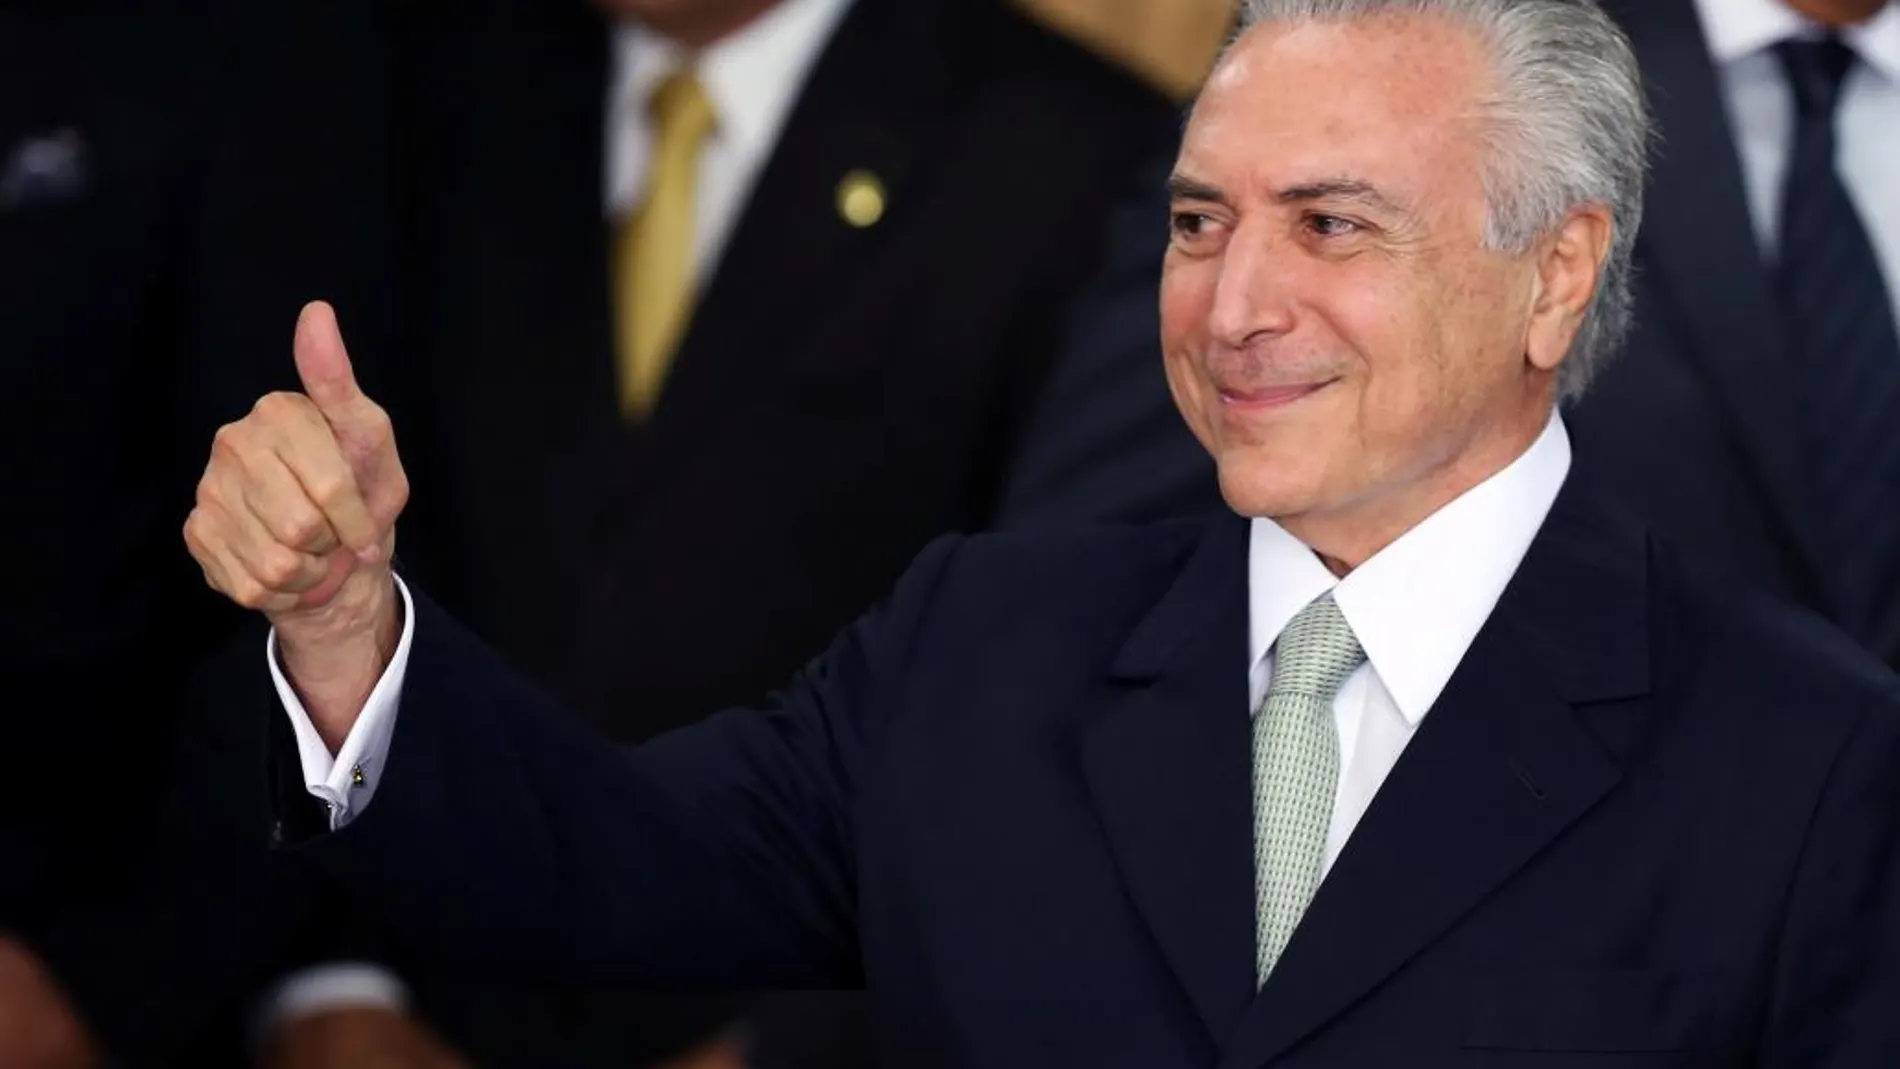 El presidente interino de Brasil, Michel Temer en su primer pronunciamiento tras sustituir a Dilma Rousseff